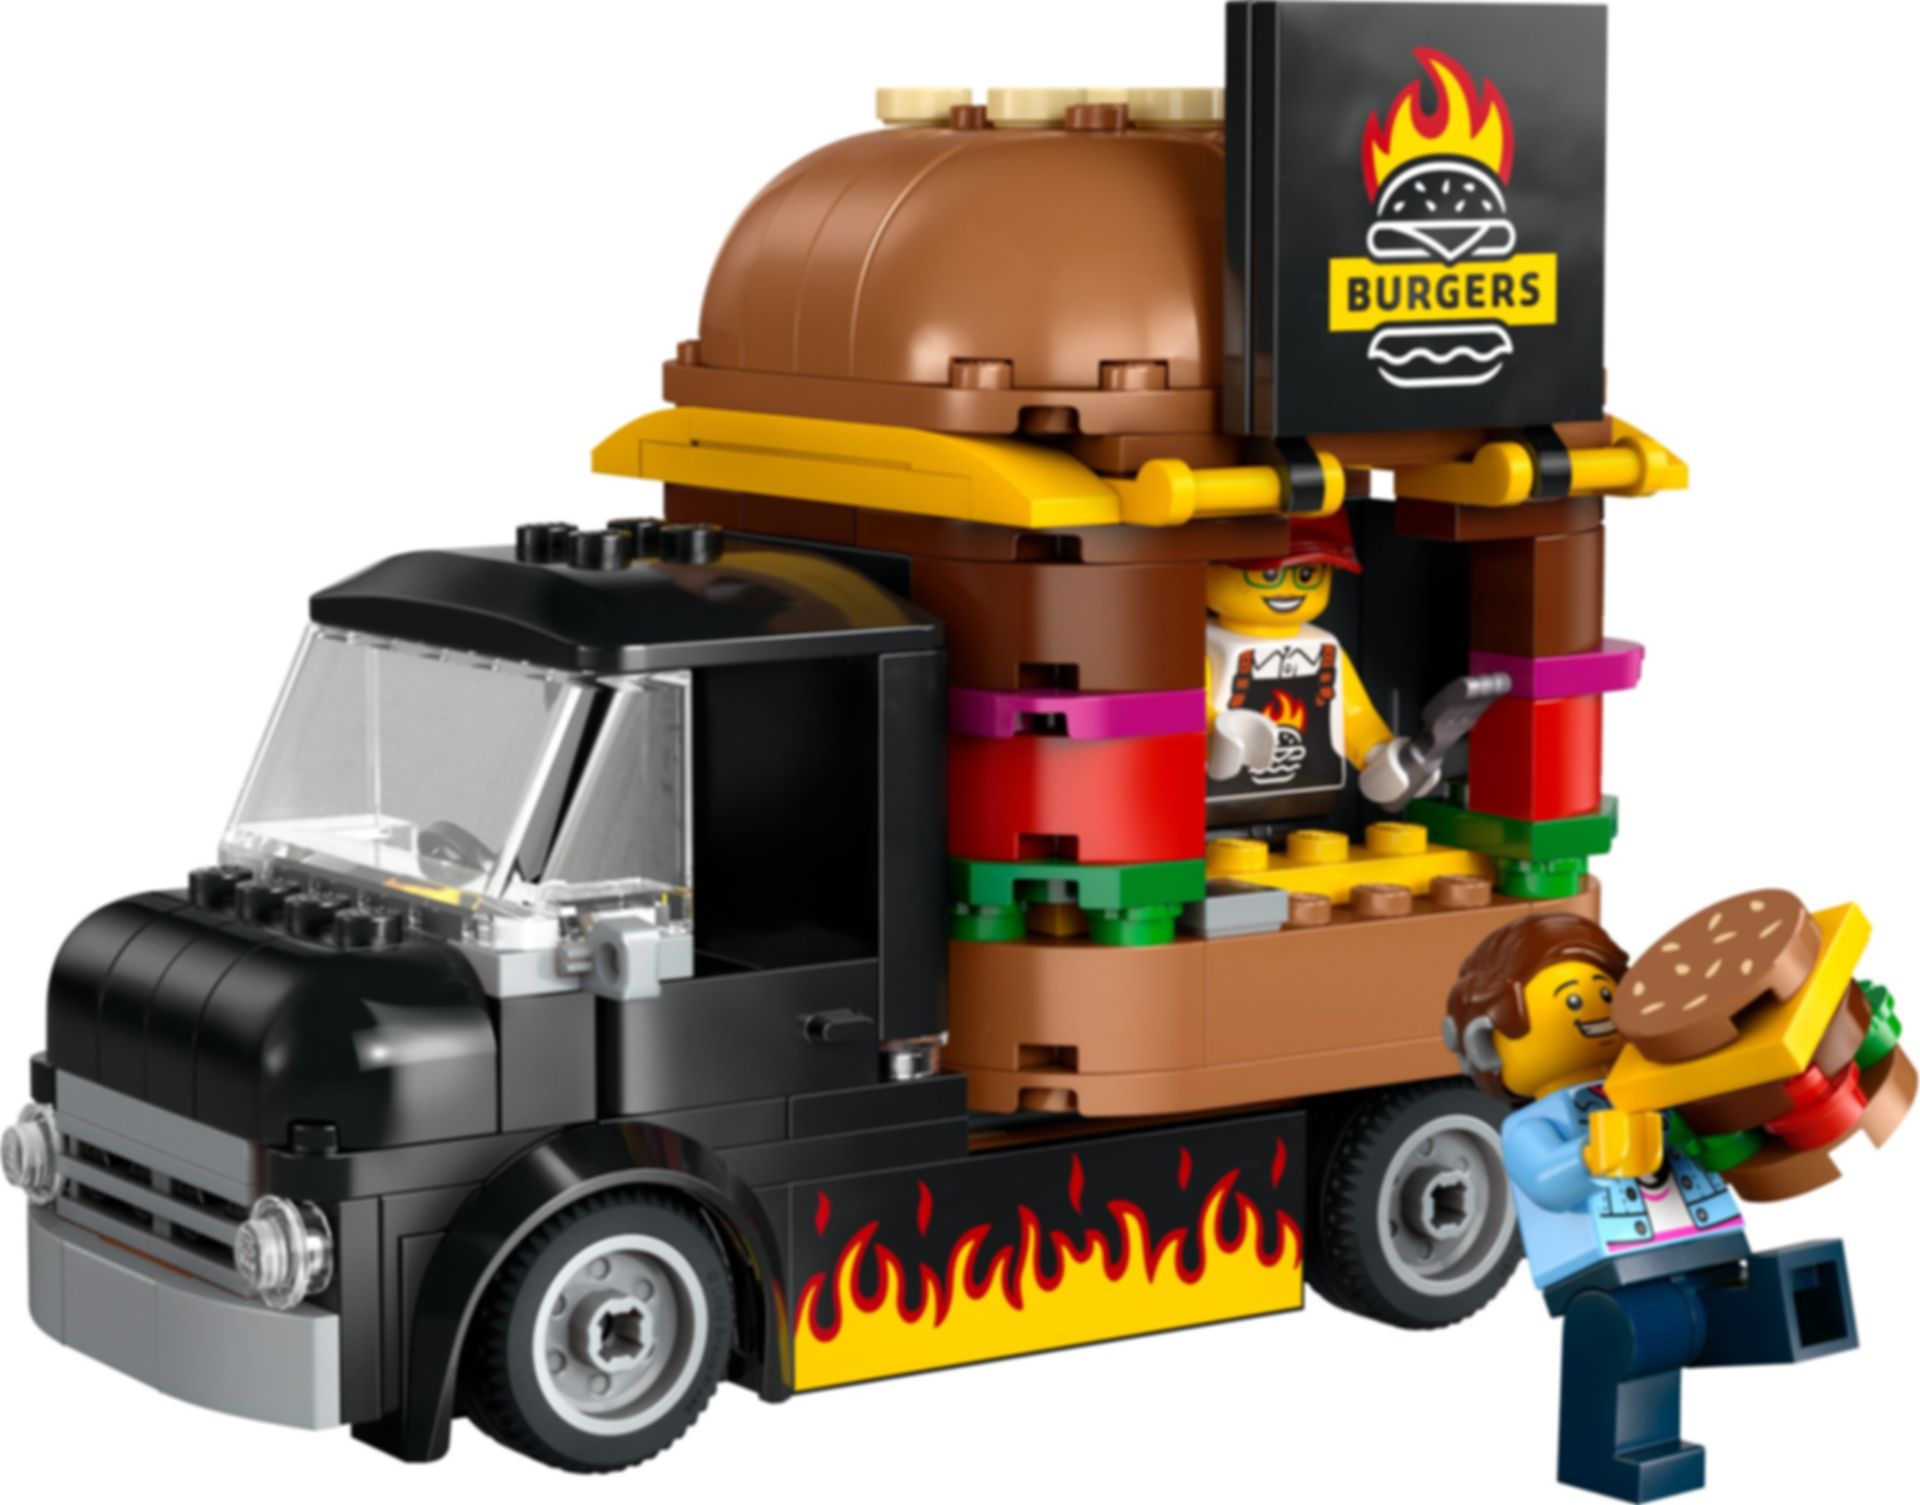 LEGO® City Burger-Truck komponenten